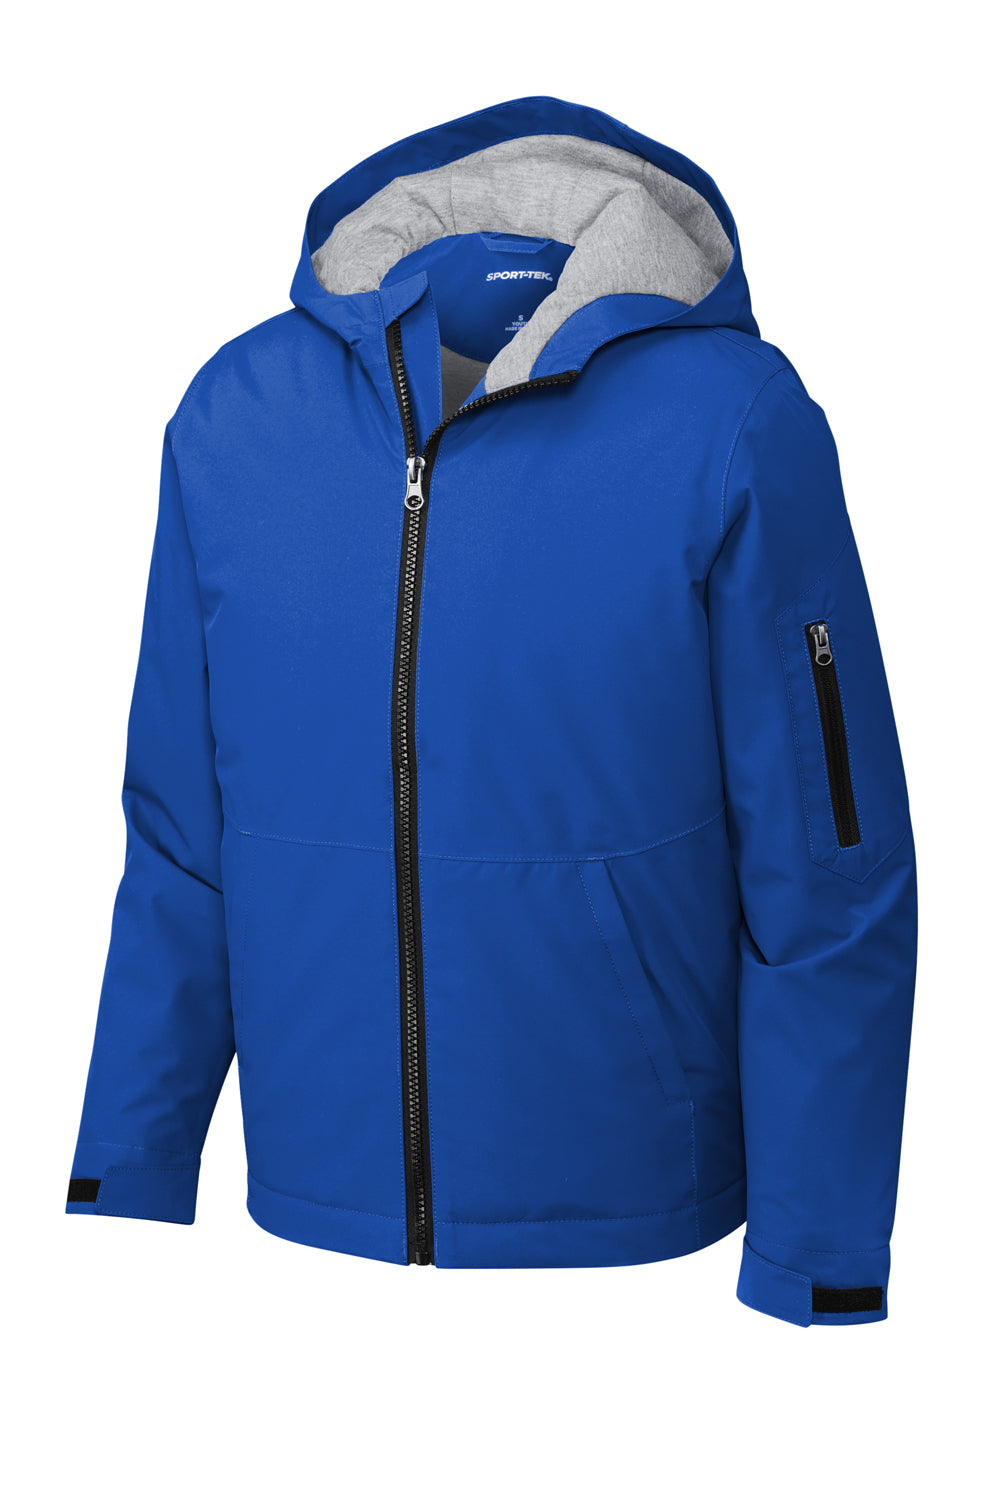 Sport-Tek YST56 Waterproof Insulated Full Zip Hooded Jacket True Royal Blue Flat Front